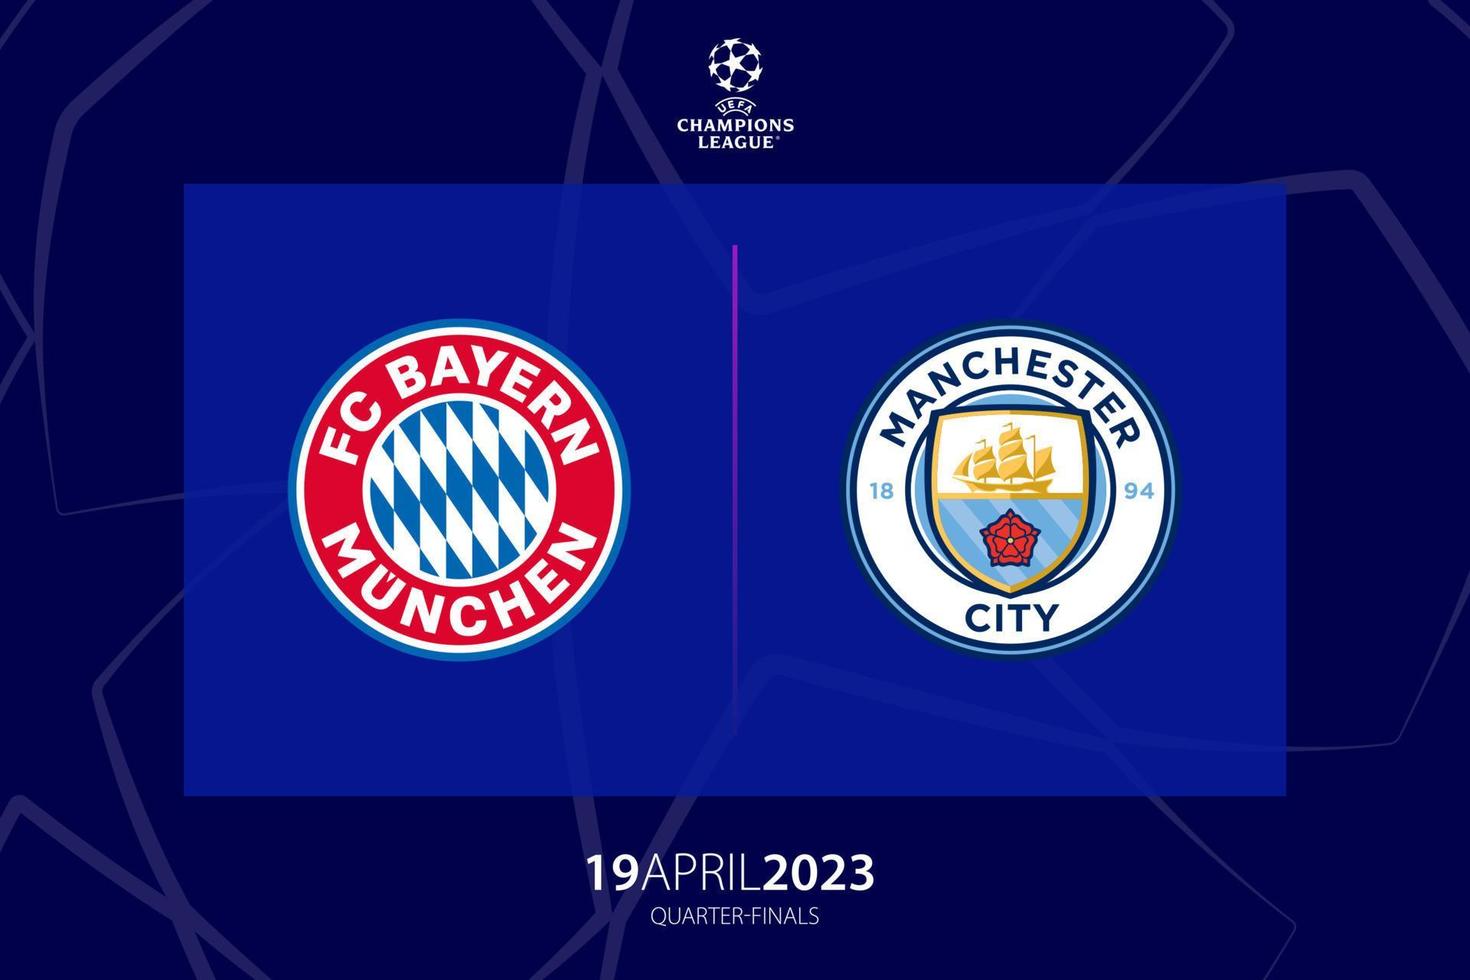 uefa campeones liga 2023 cuartos de final Entre bayern Munich versus Manchester ciudad, juego dos. tiflis, Georgia - abril 06, 2023. vector